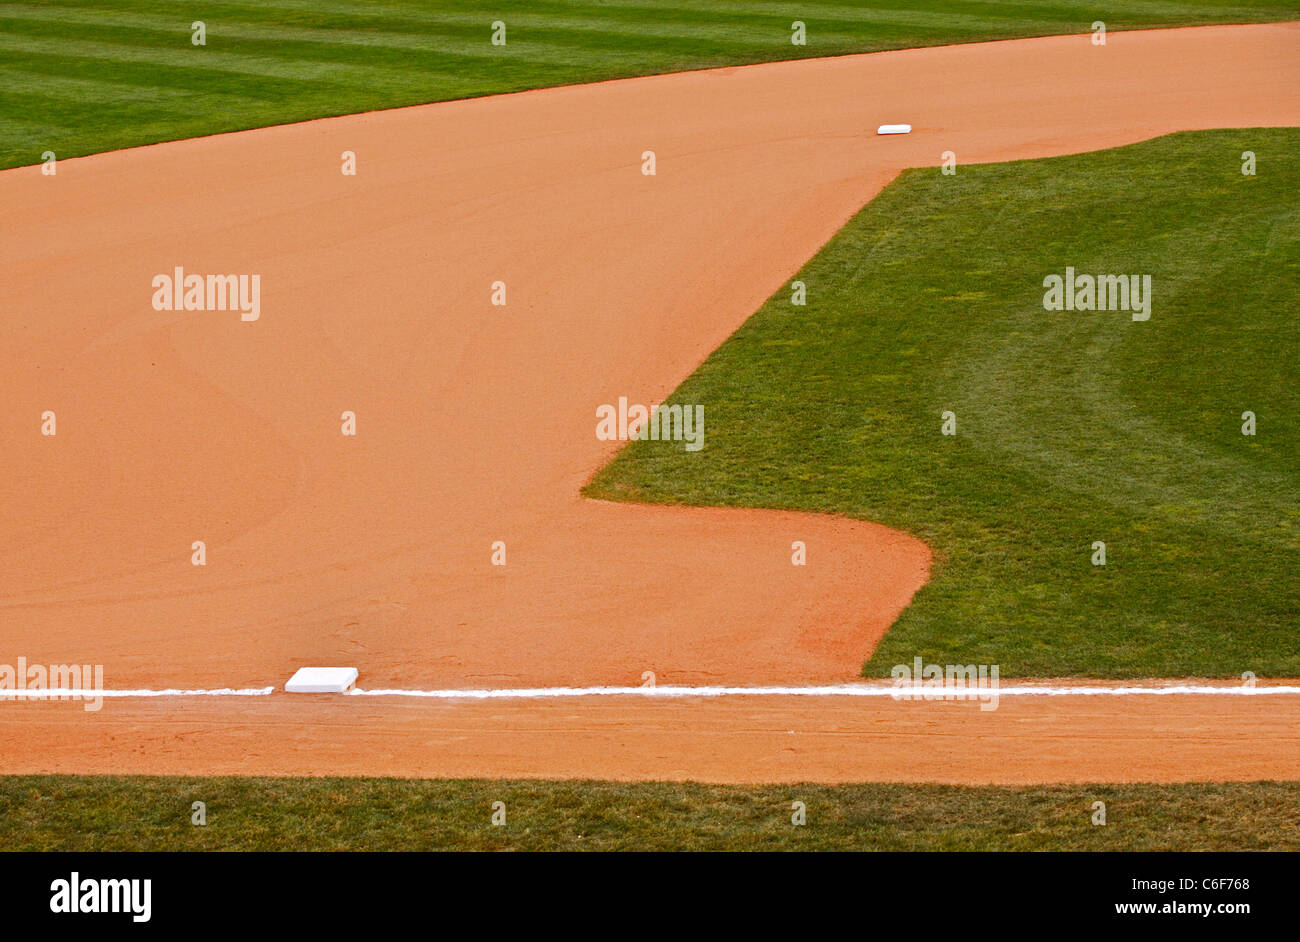 Baseball Field Dirt High Resolution